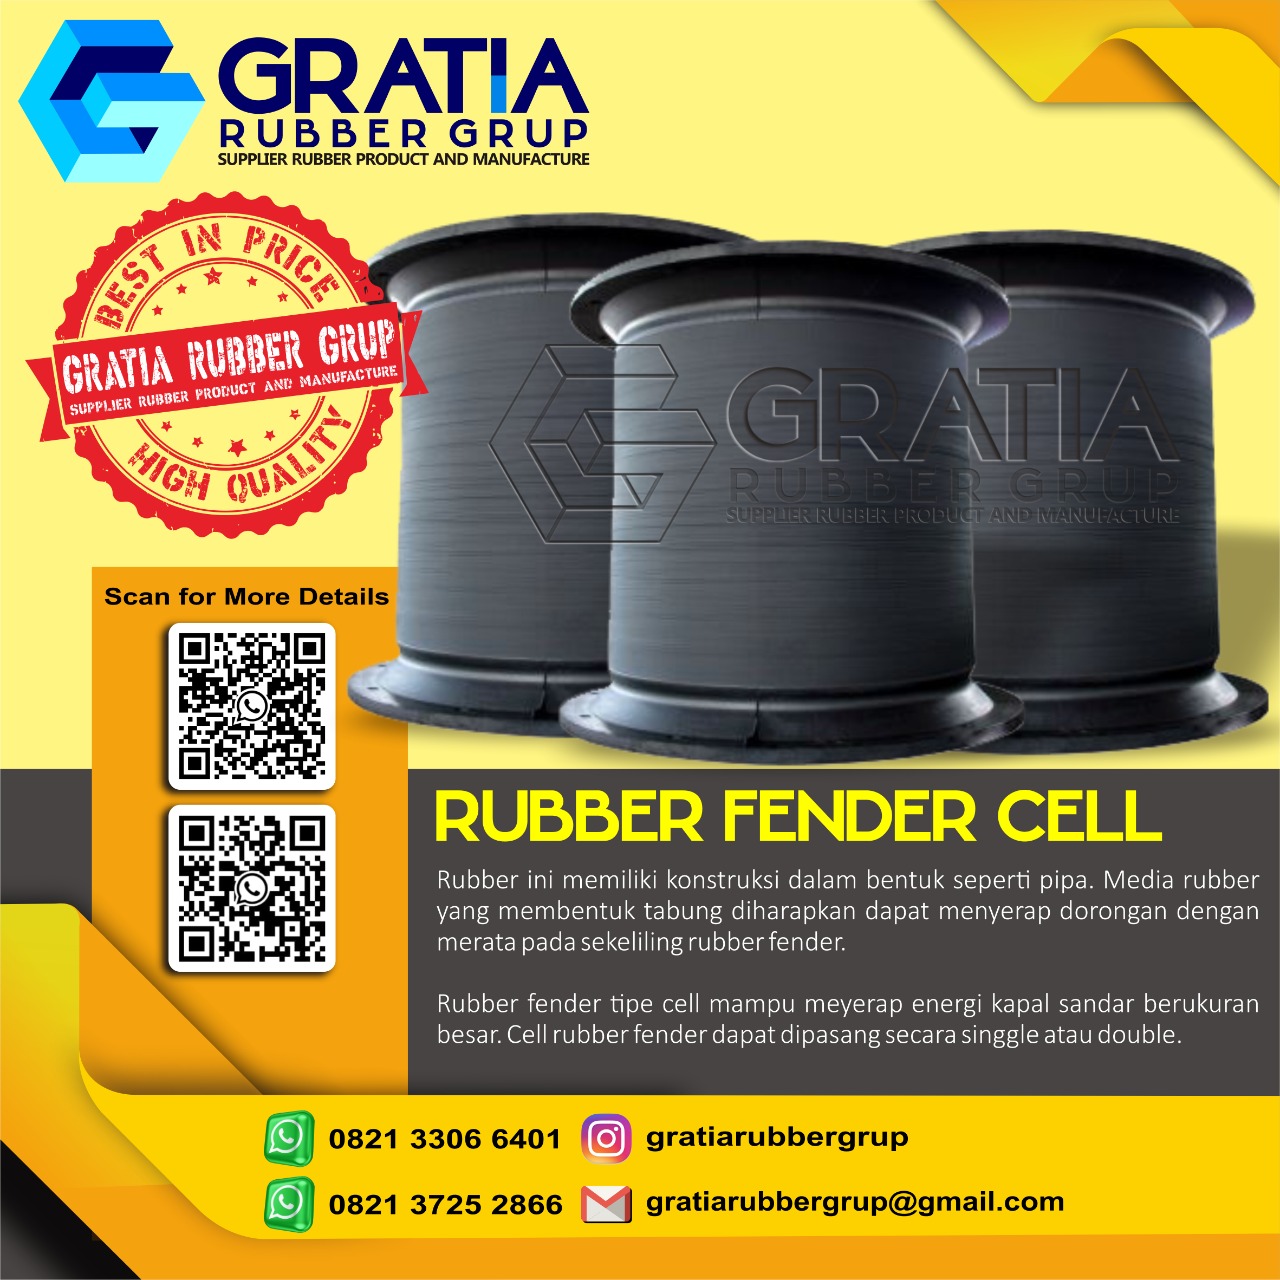 Jual Rubber Fender Berkualitas  Melayani Pengiriman Ke Jakarta Timur Hub 0821 3306 0461